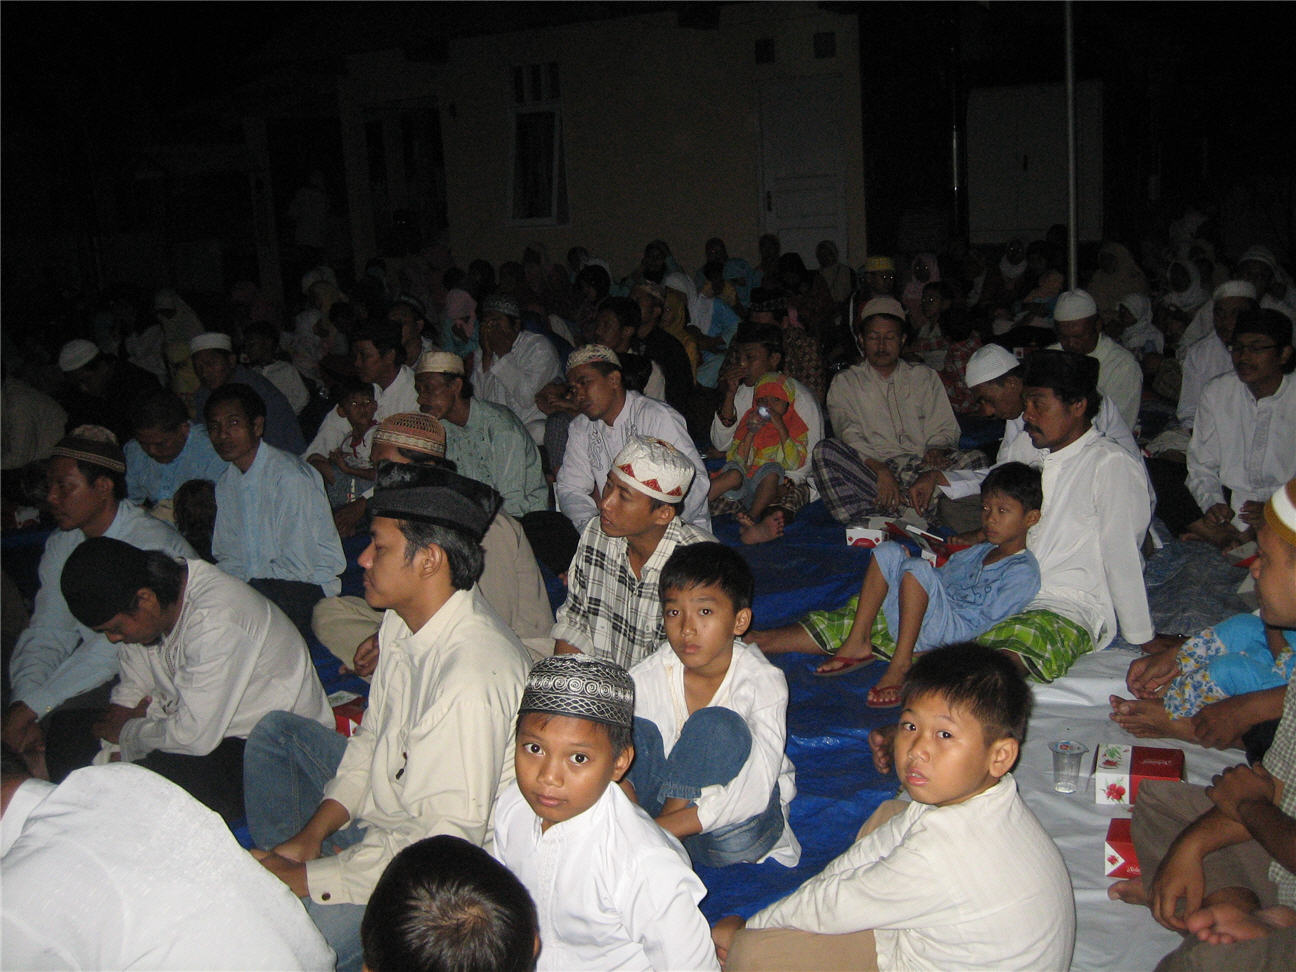 Sambutan Ketua Rw Acara Maulid Nabi - Marhaban Ya Ramadhan